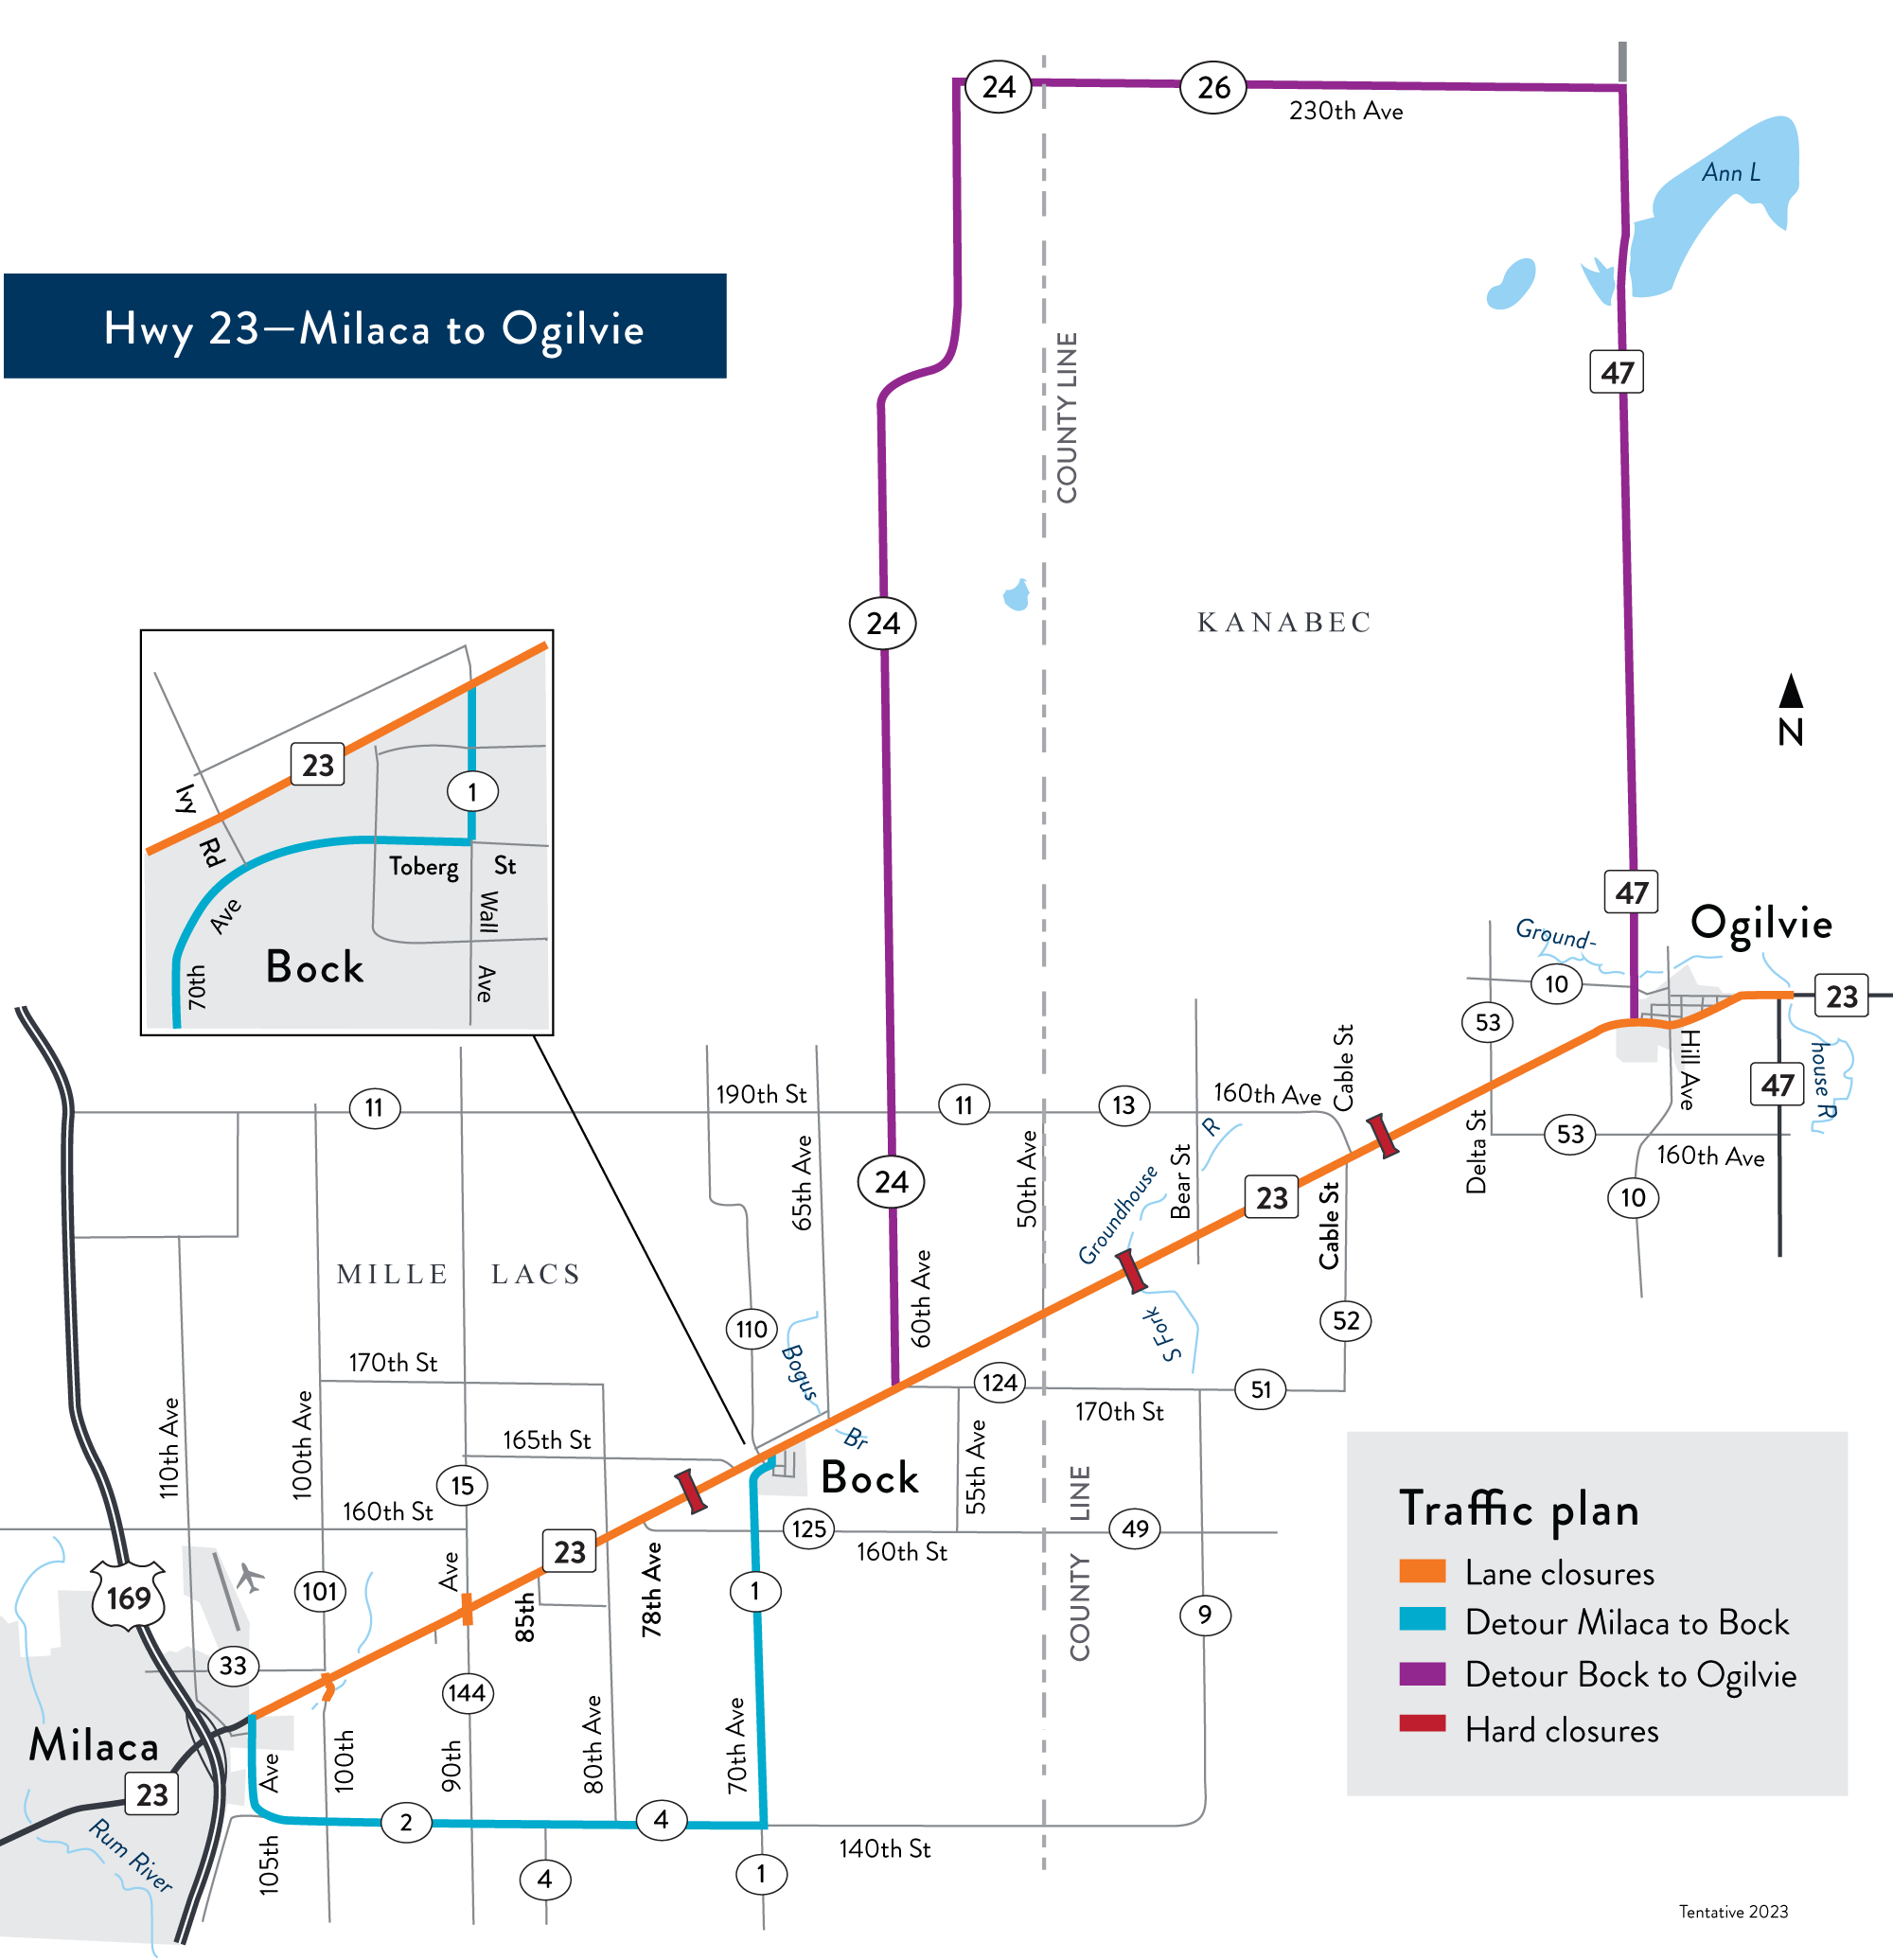 Hwy 23 tentative traffic plan map - detours